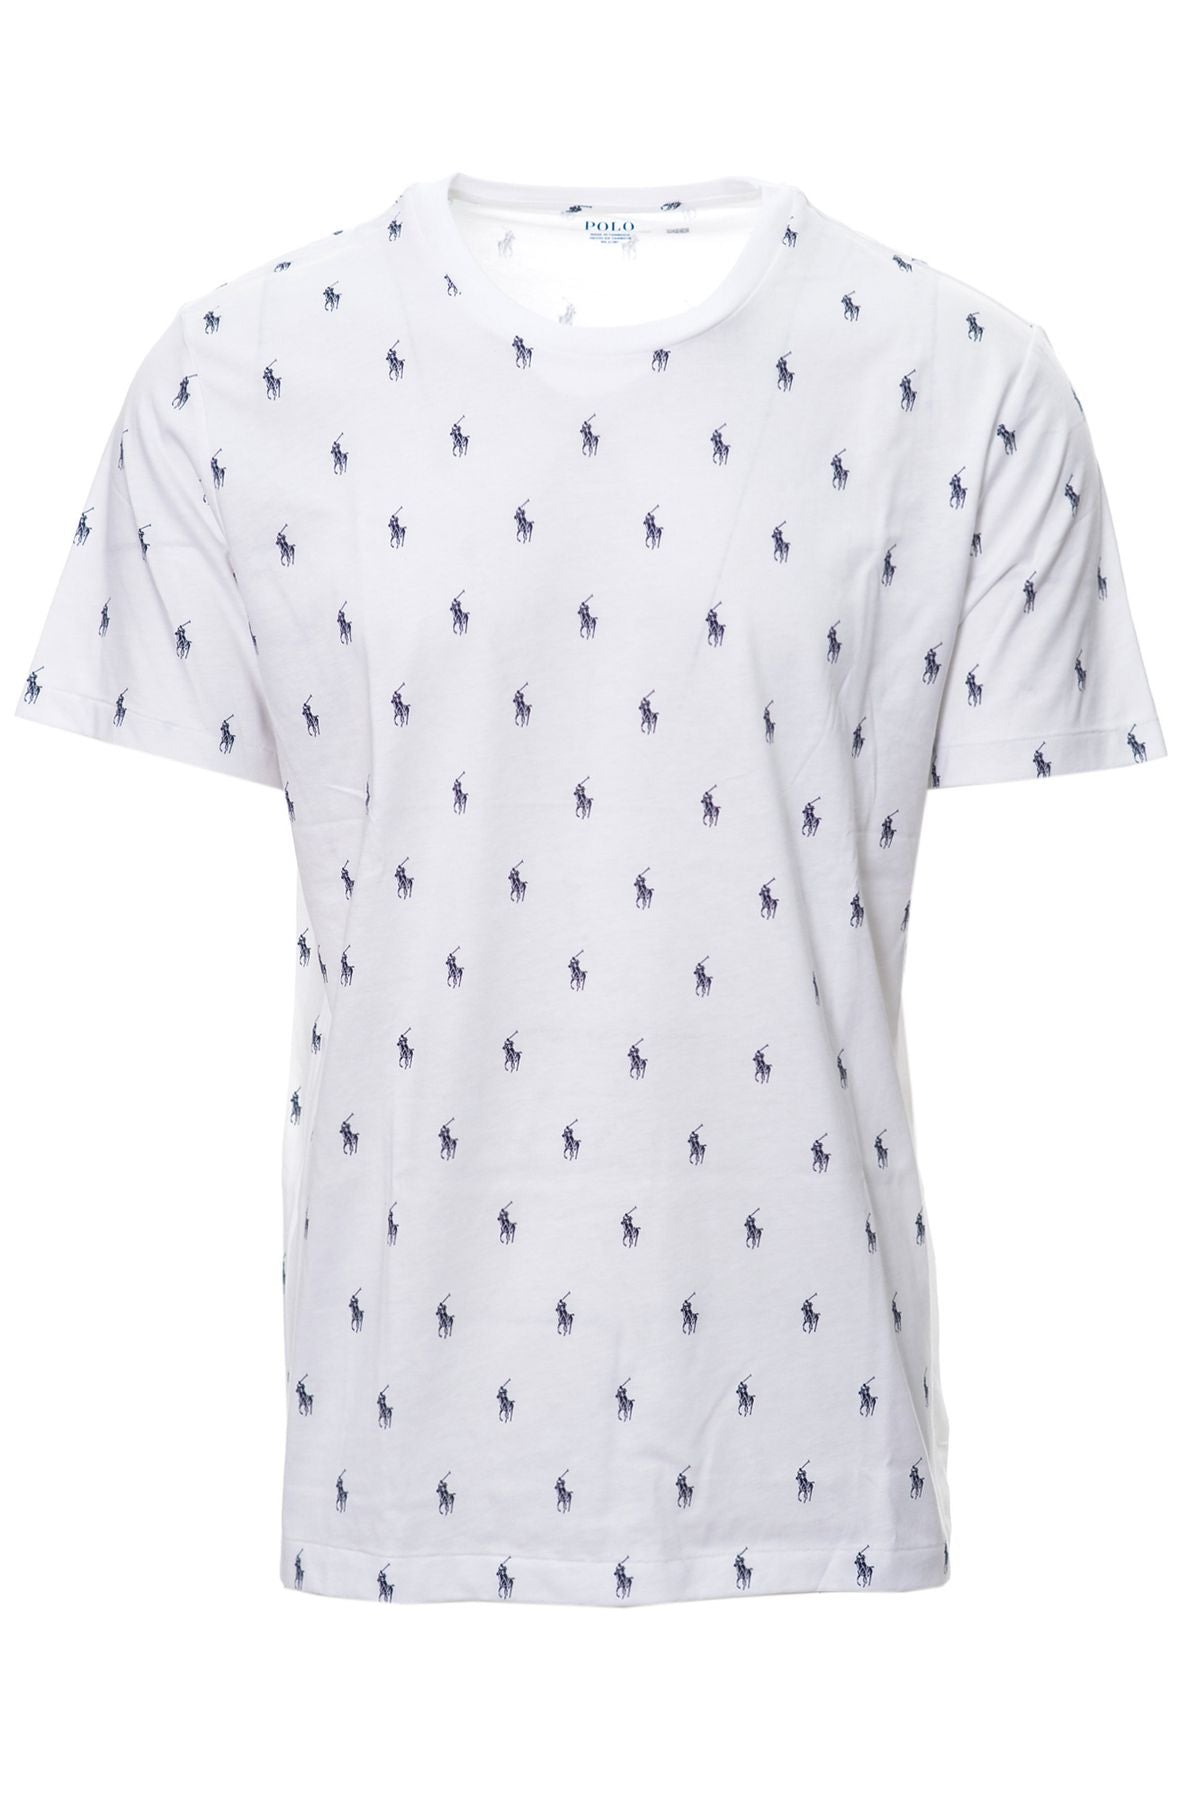 RALPH LAUREN Spring/Summer Cotton T-shirt